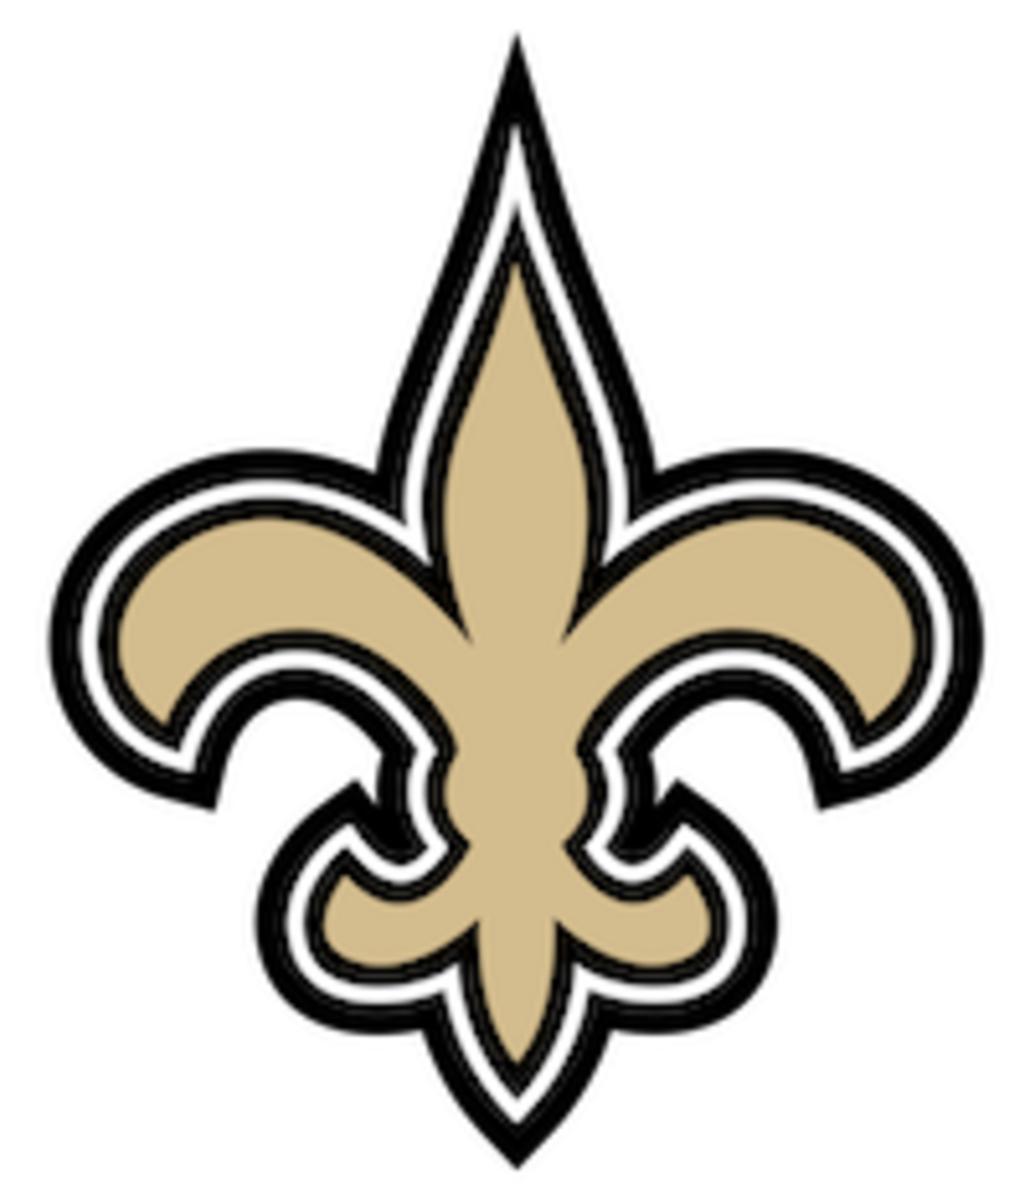 new-orleans-saints-logo-transparent